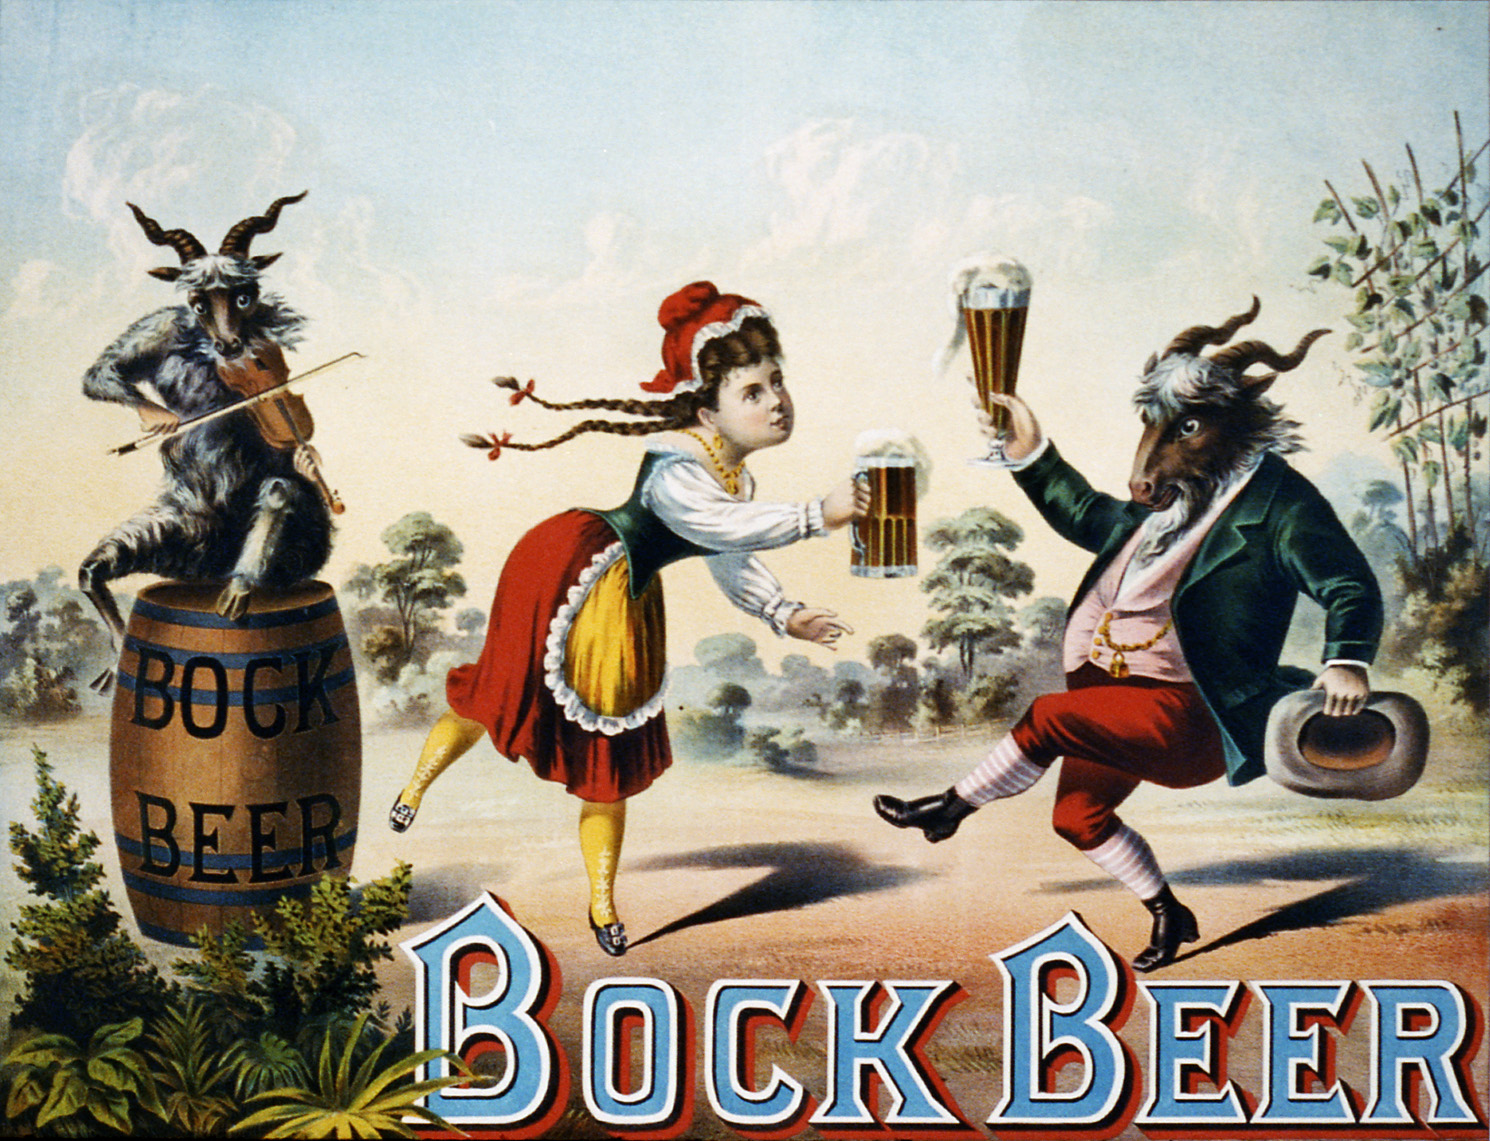 Bock_beer_advertising,_1882